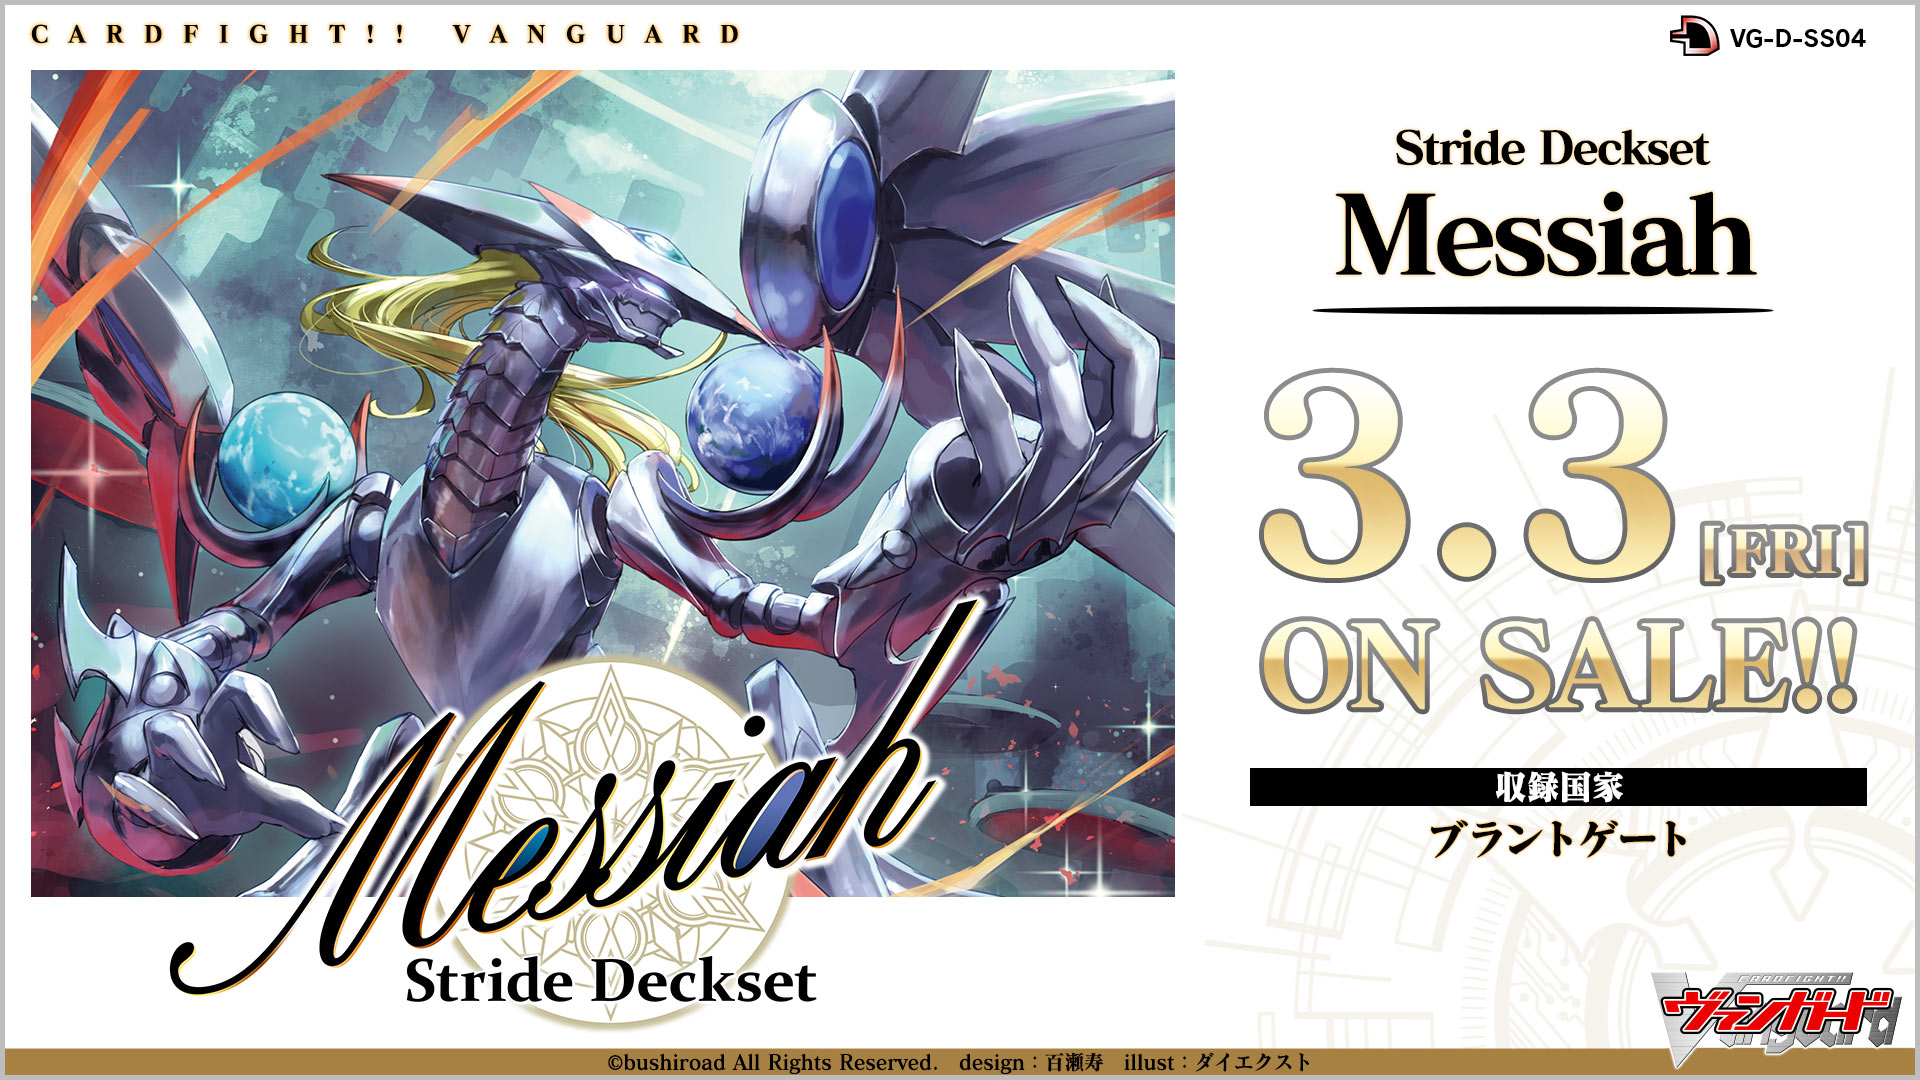 スペシャルシリーズ第4弾「Stride Deckset Messiah(ストライド デッキ